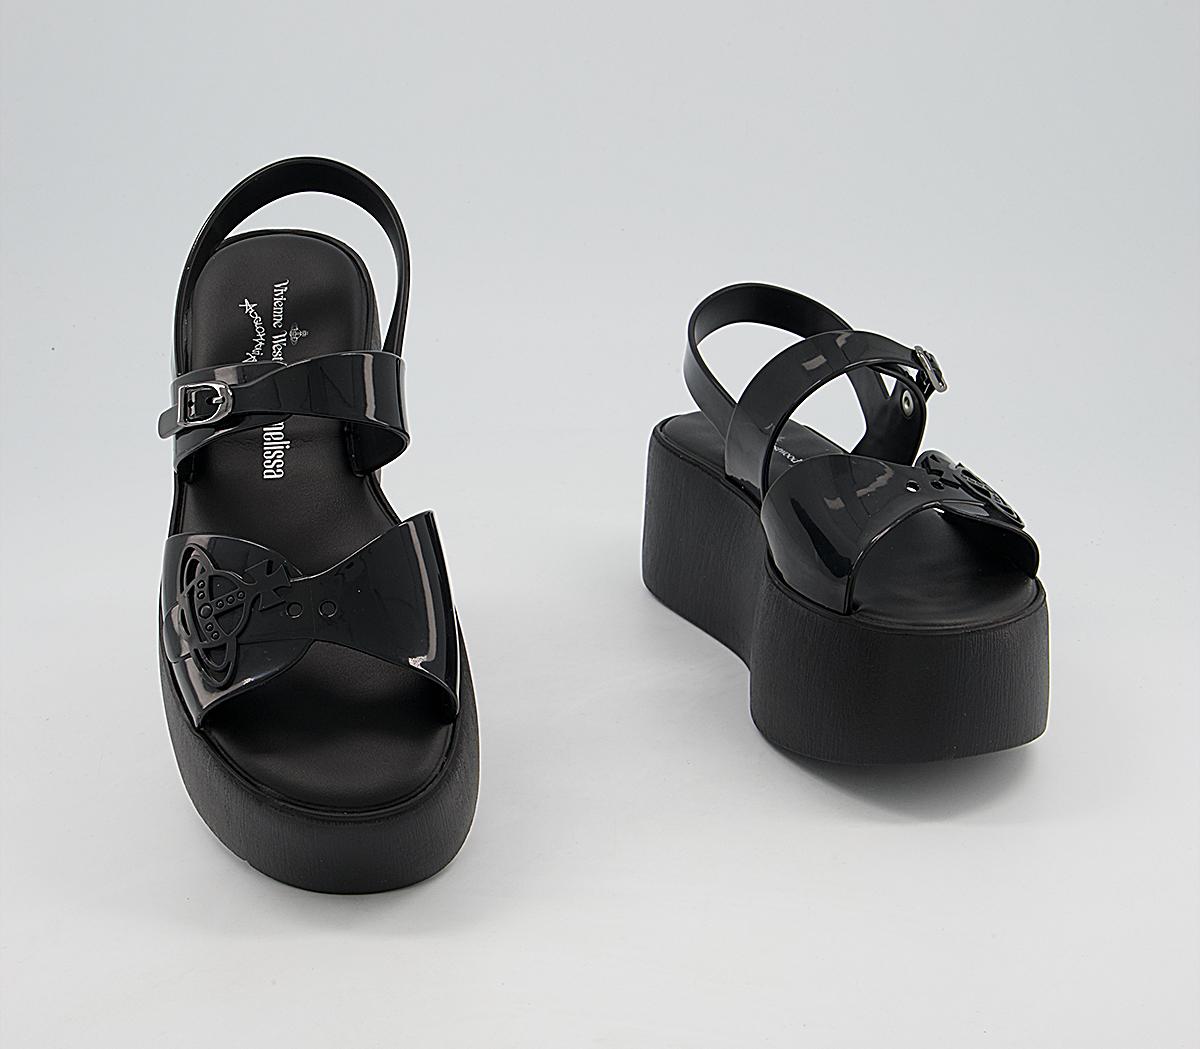 Vivienne Westwood Vw Connect Platform Sandals Black - Women's Vegan Shoes